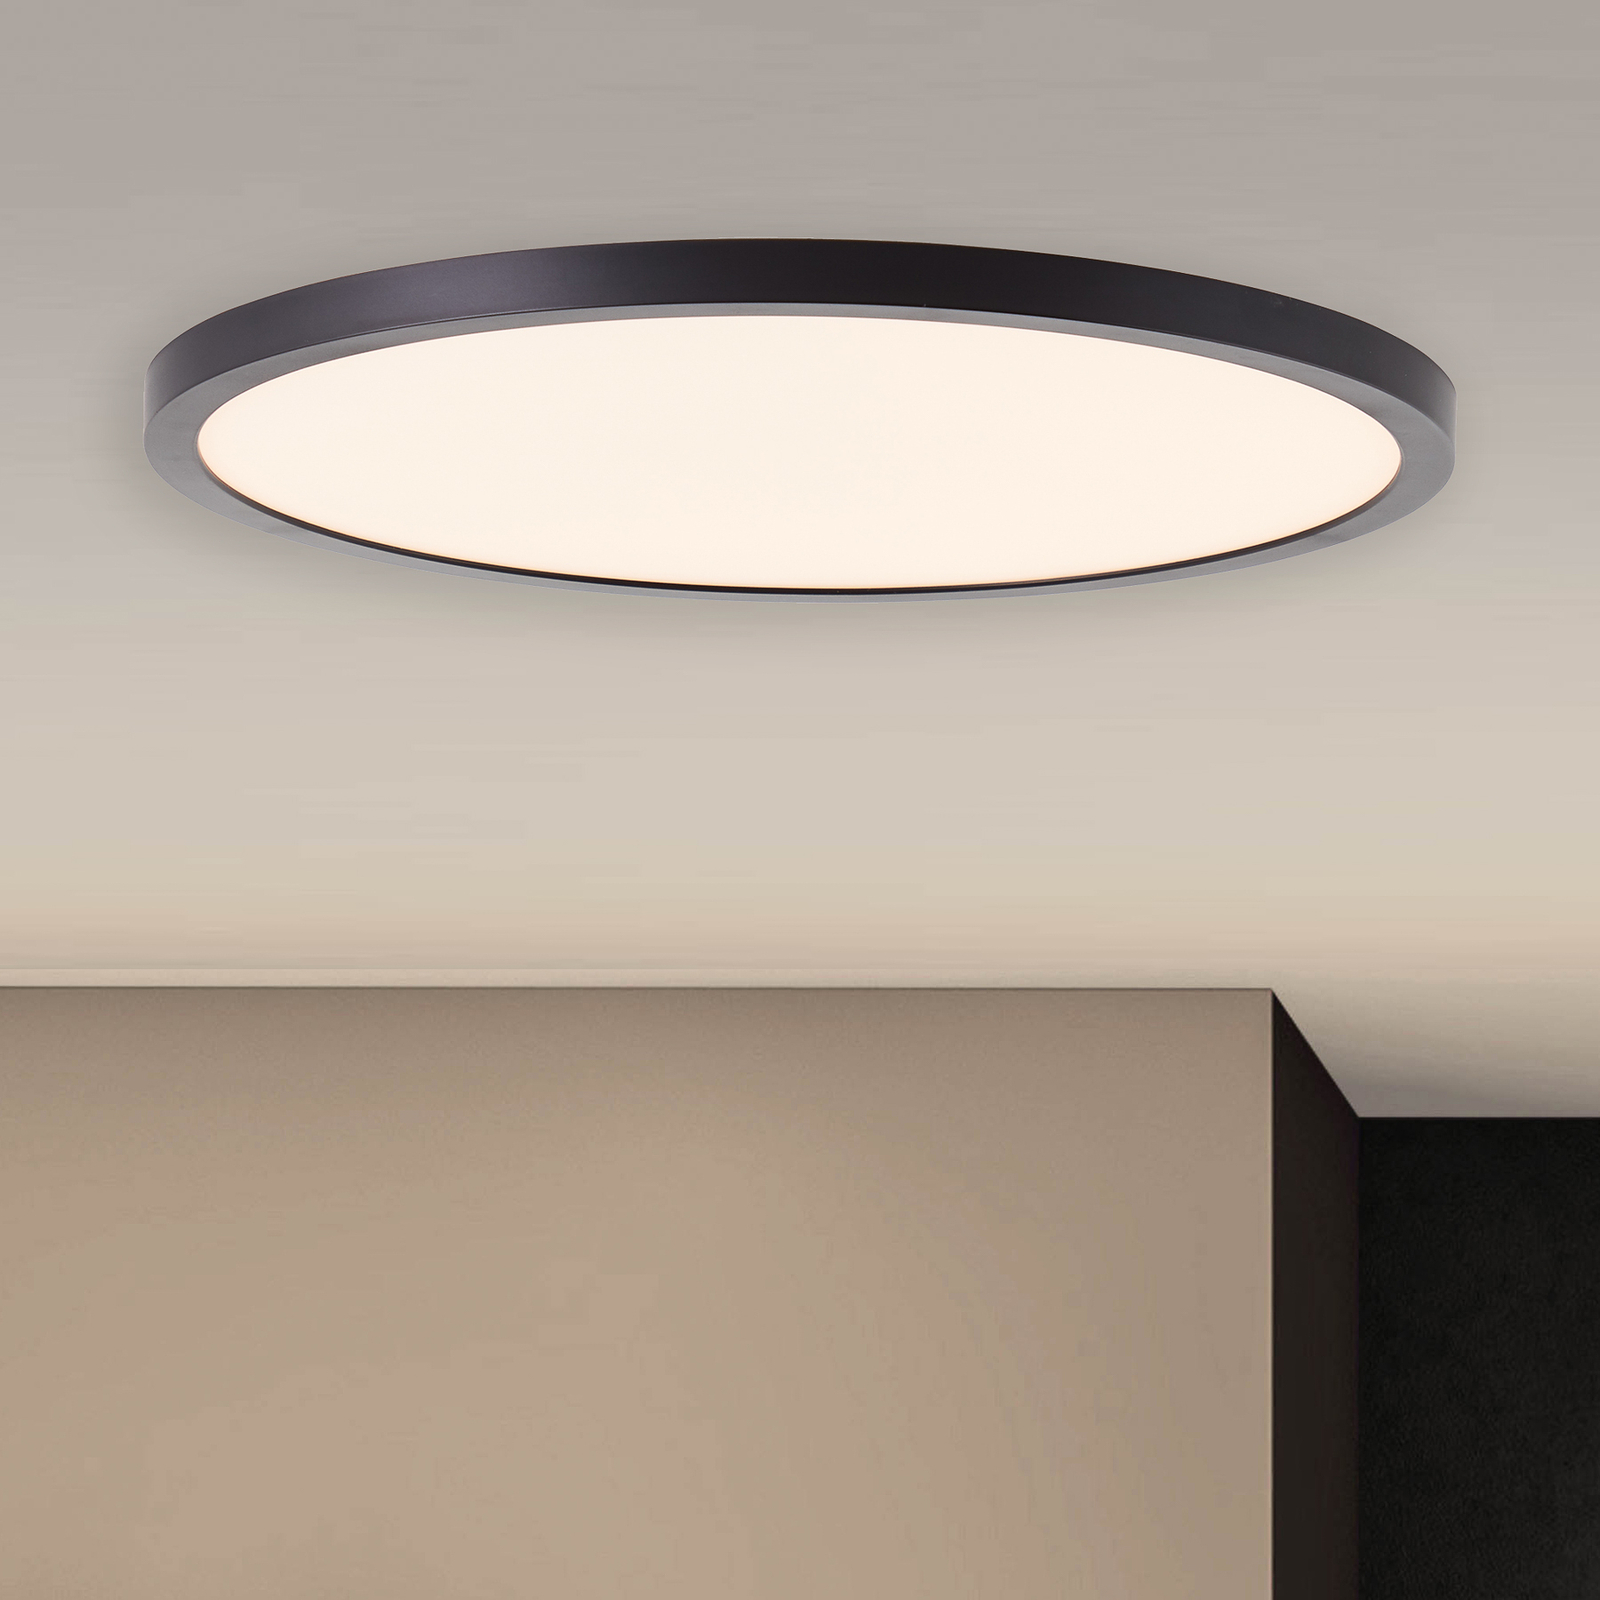 Uiterlijk buitenspiegel Promotie LED plafondlamp Tuco, dimbaar, zwart, Ø 30 cm | Lampen24.nl